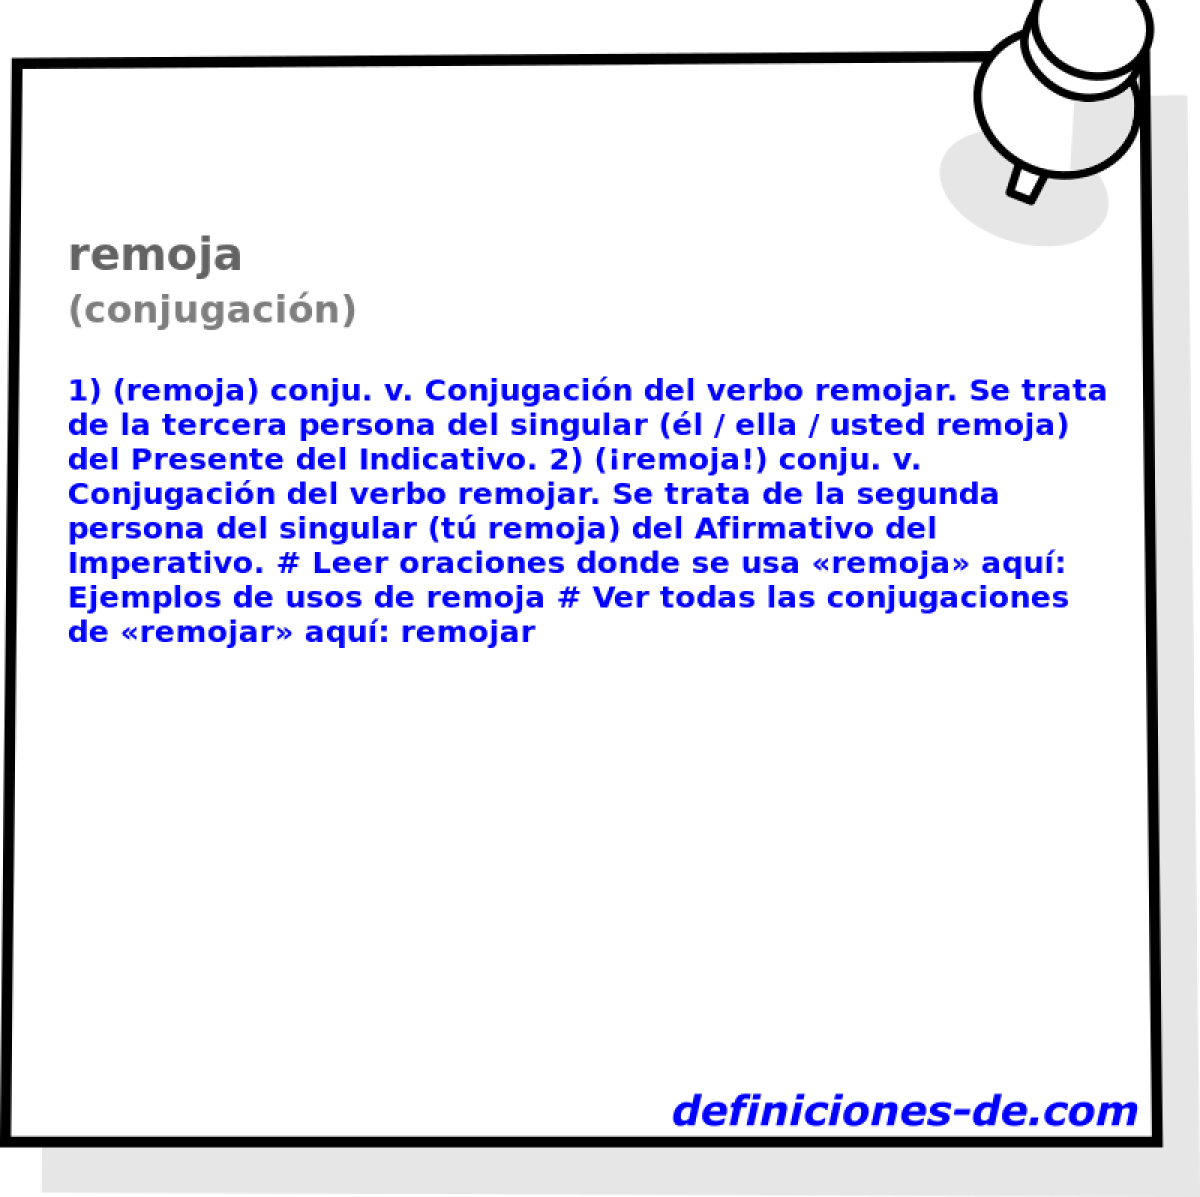 remoja (conjugacin)